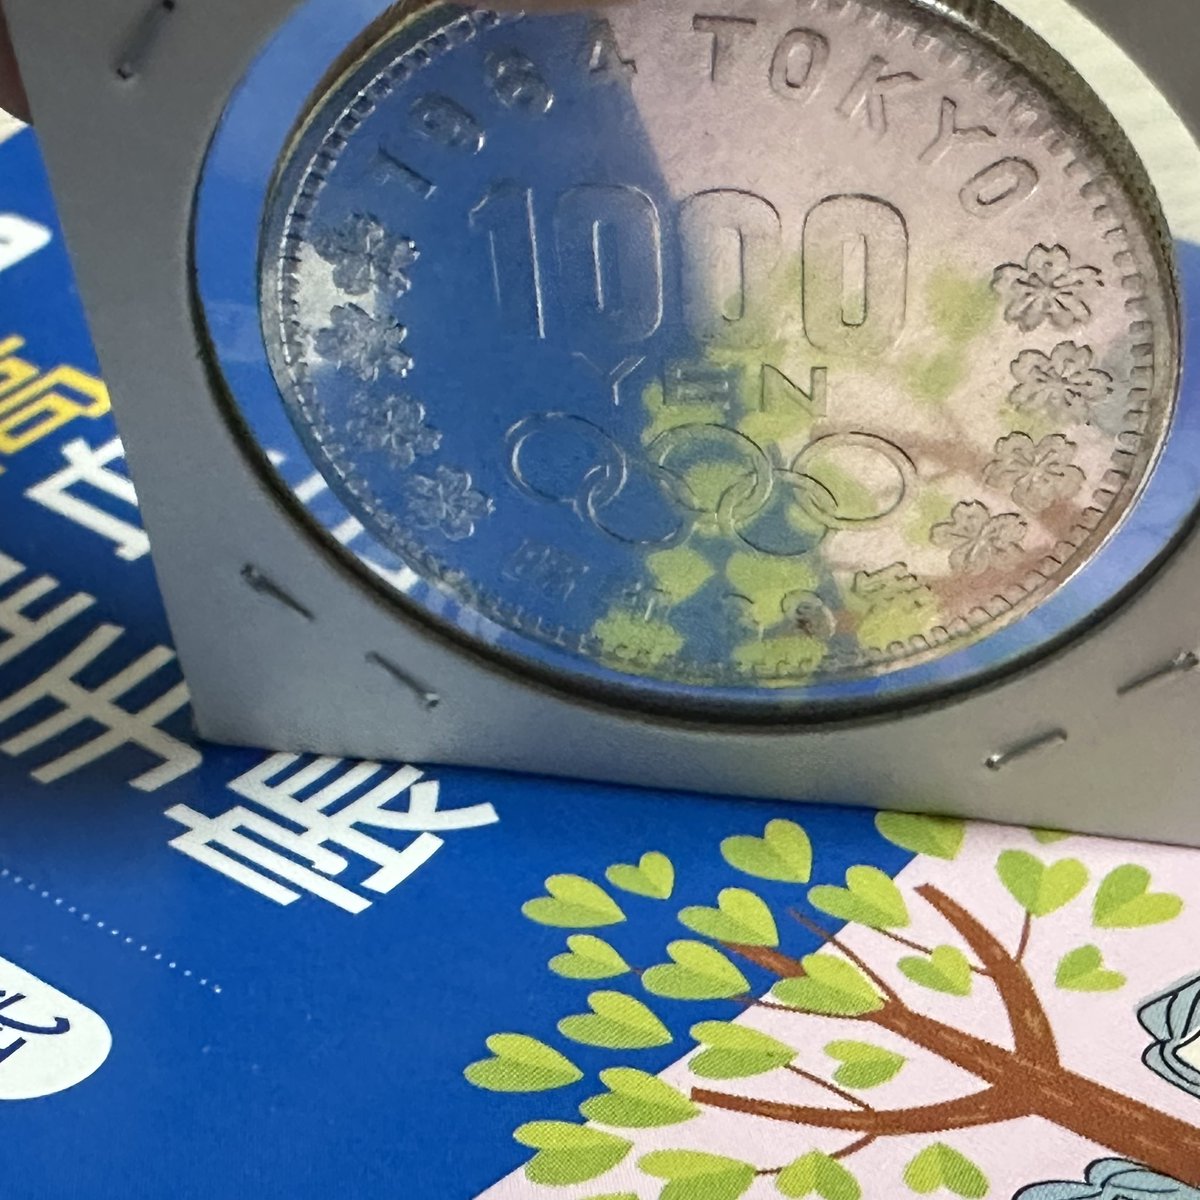 今日の入手品
東京オリンピック記念1000円銀貨

これはPLいけるのでは⁈
ちょっと弱いかなぁ。
スレ傷は比較的少ないんです。